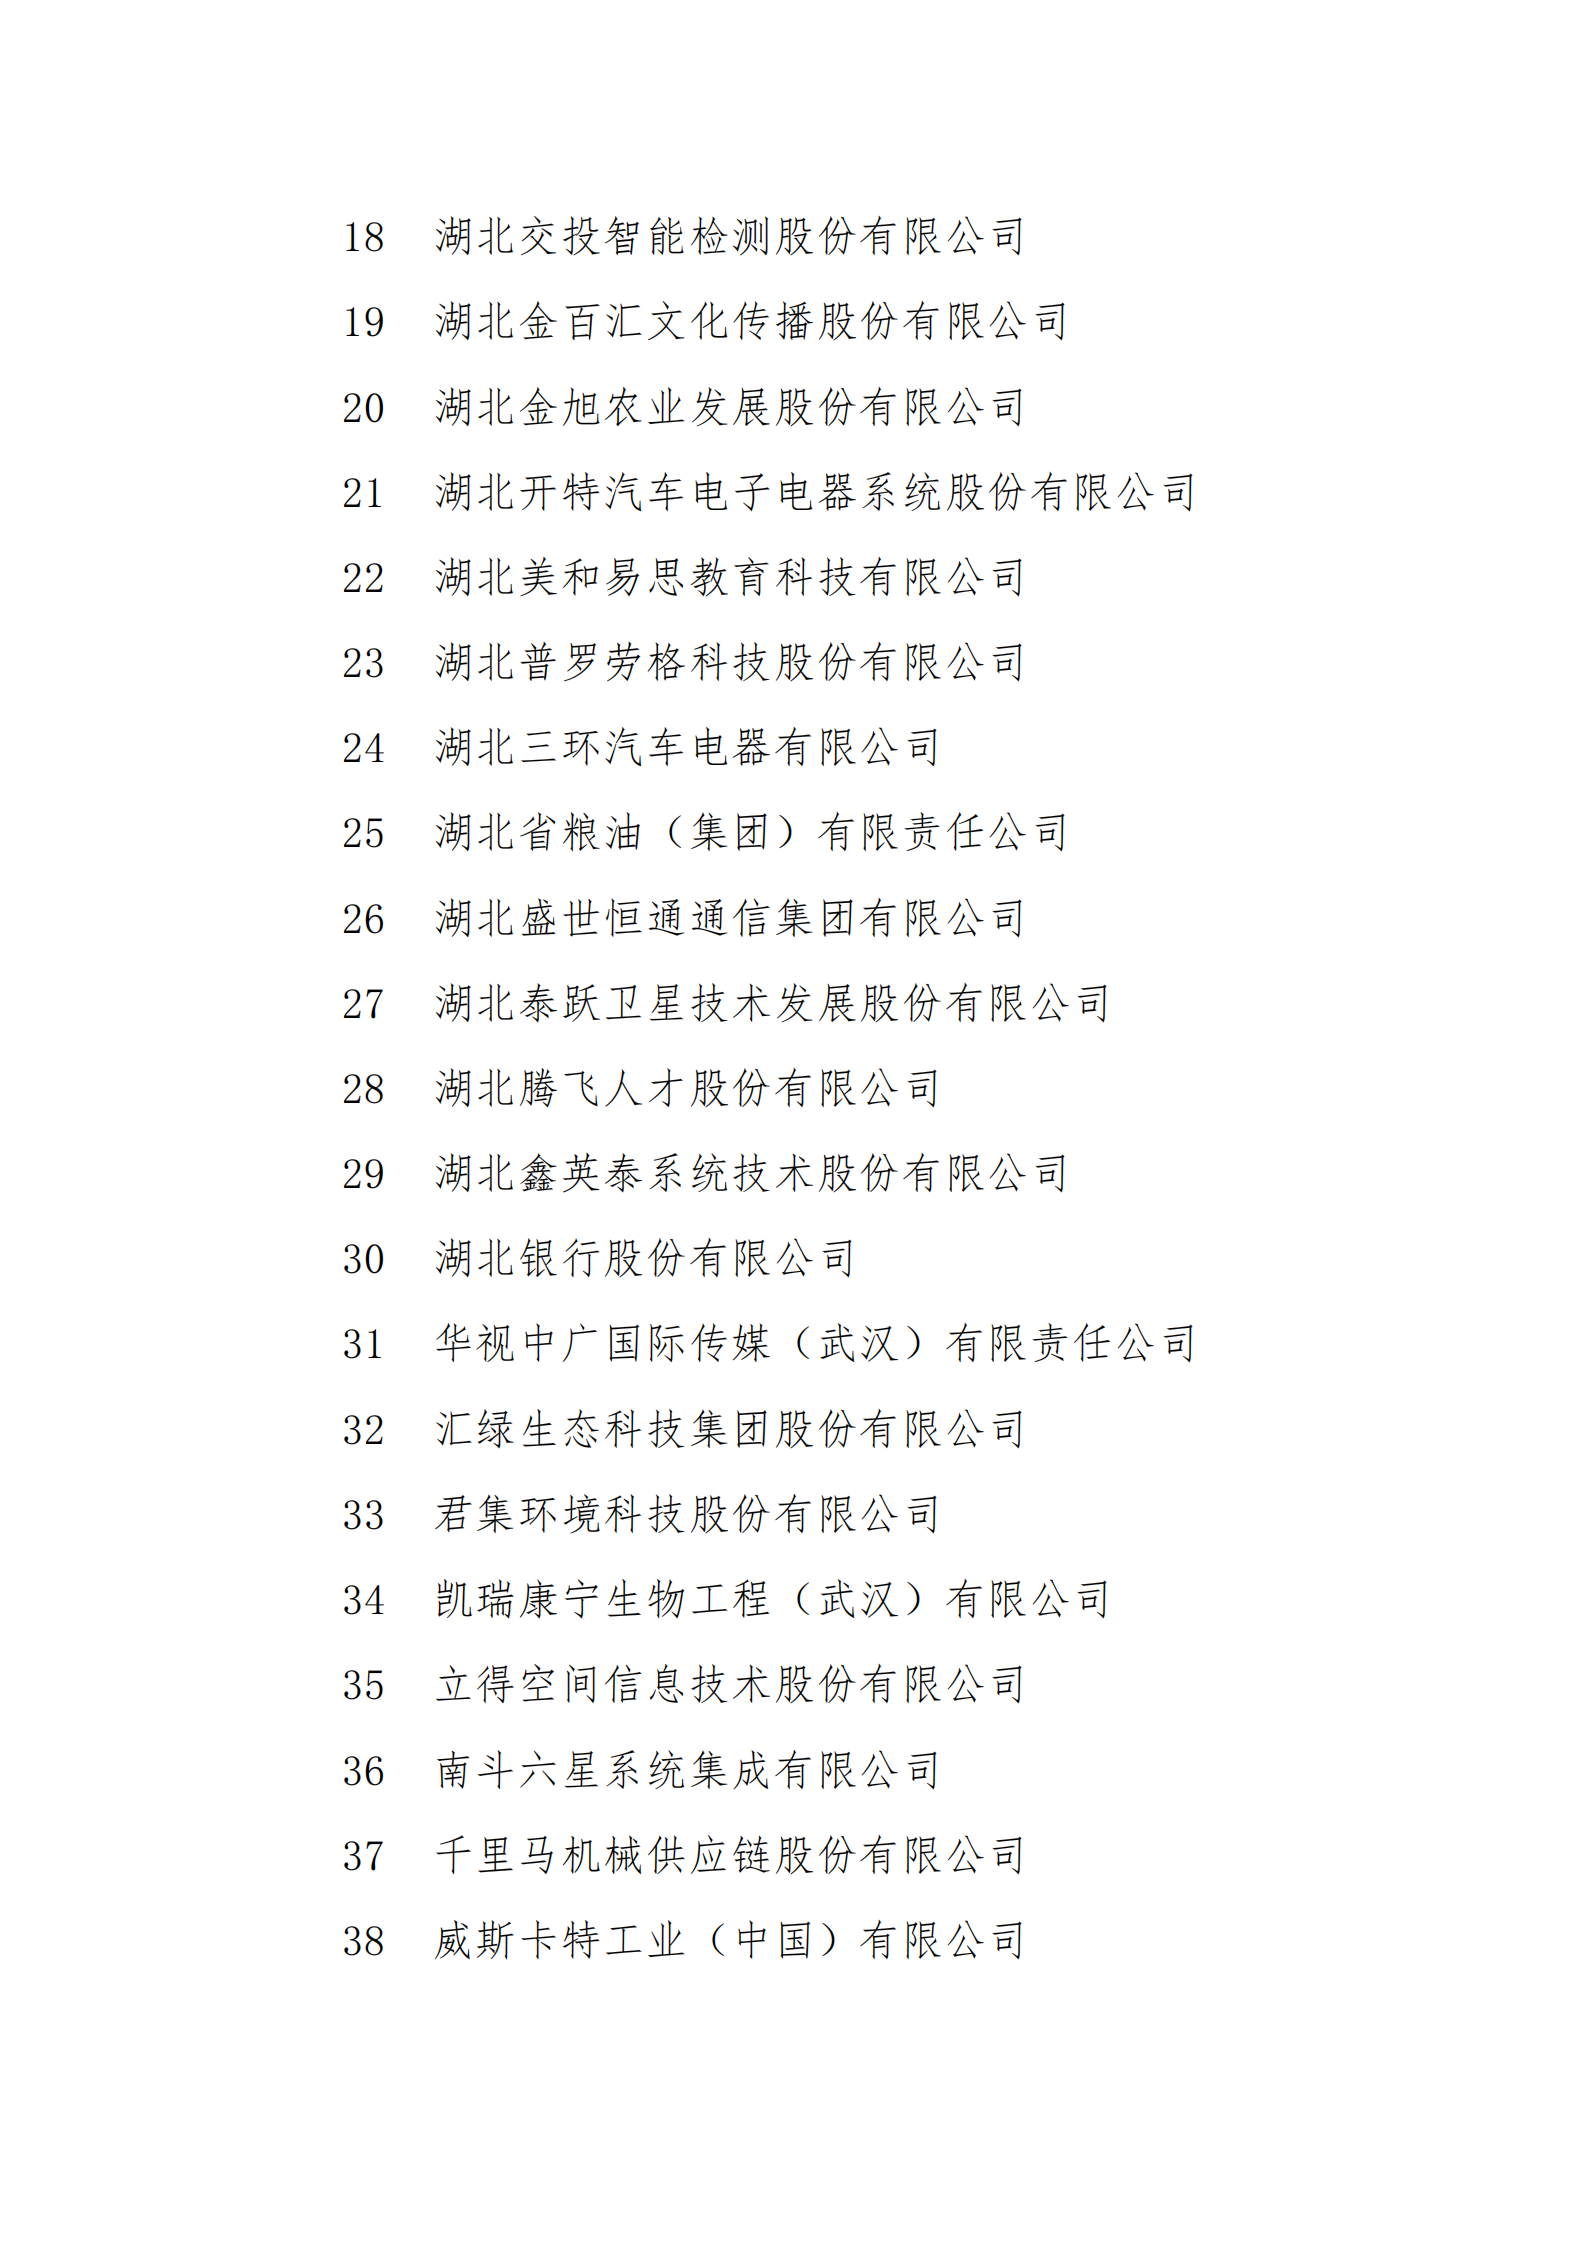 附件1：拟报2021年武汉市上市后备 “金种子”企业名单_01.png